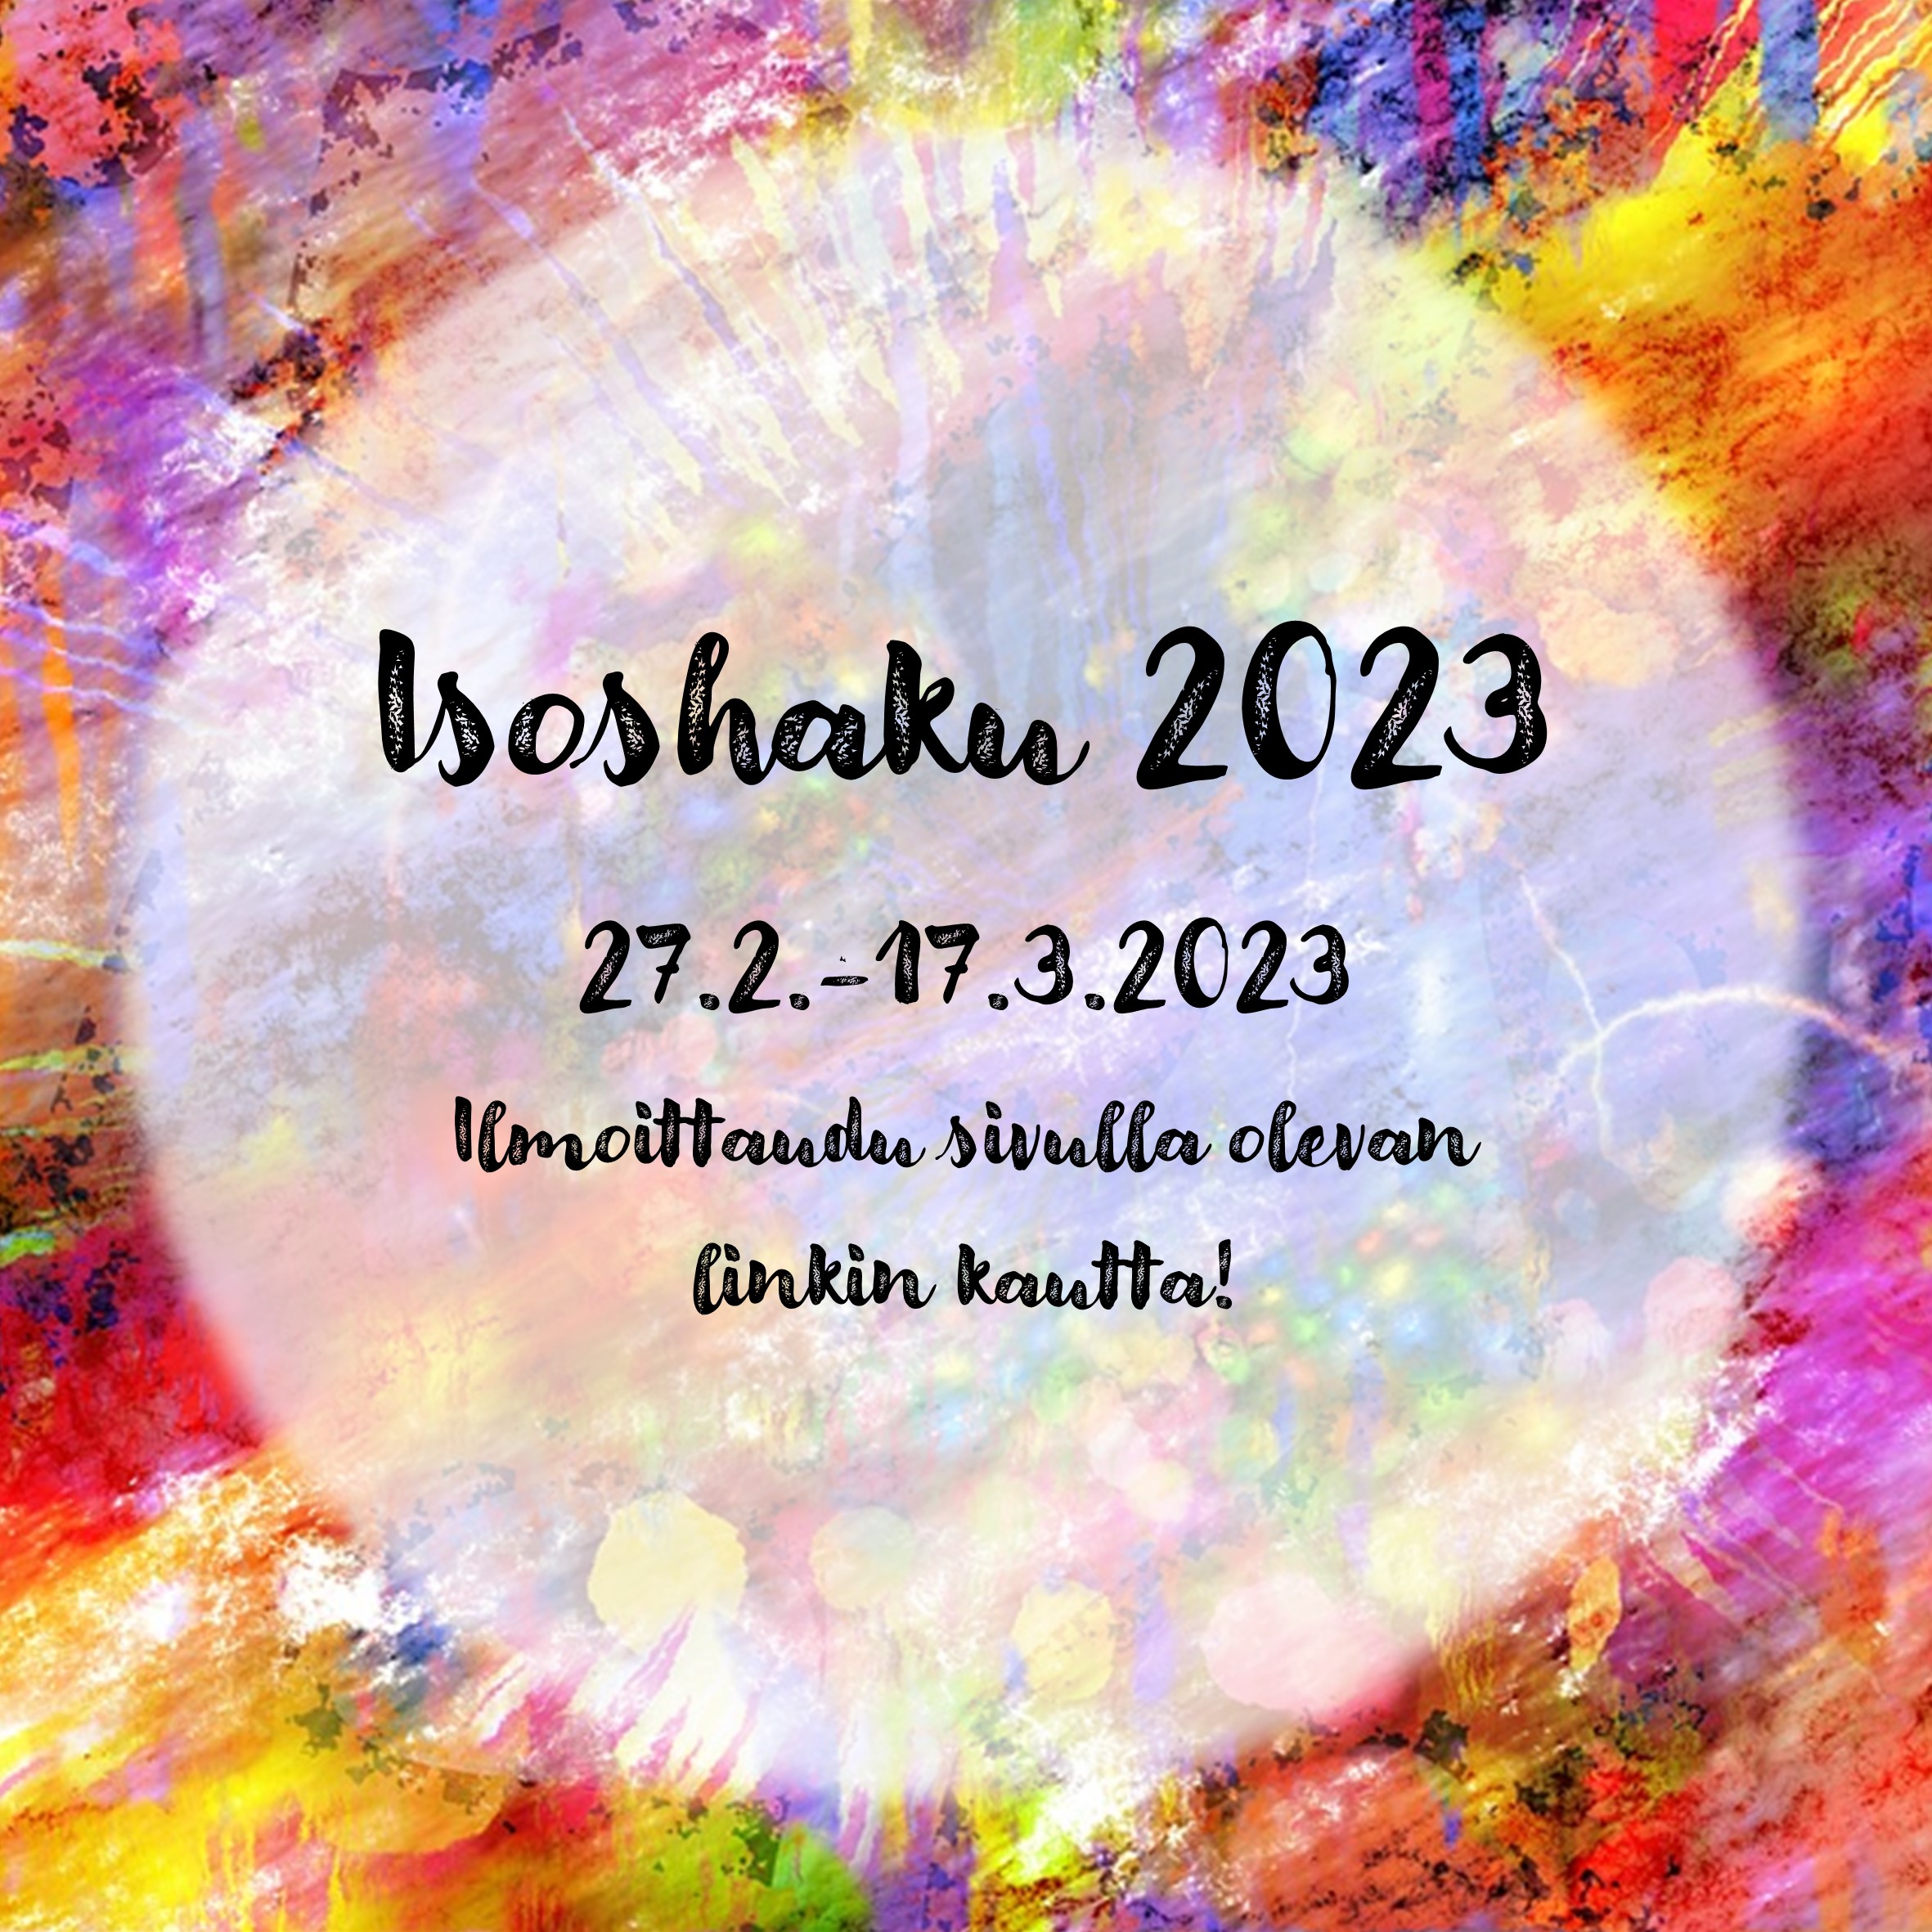 Isoshaku 2023
27.2.-17.3.2023
Ilmoittaudu sivulla olevan linkin kautta!